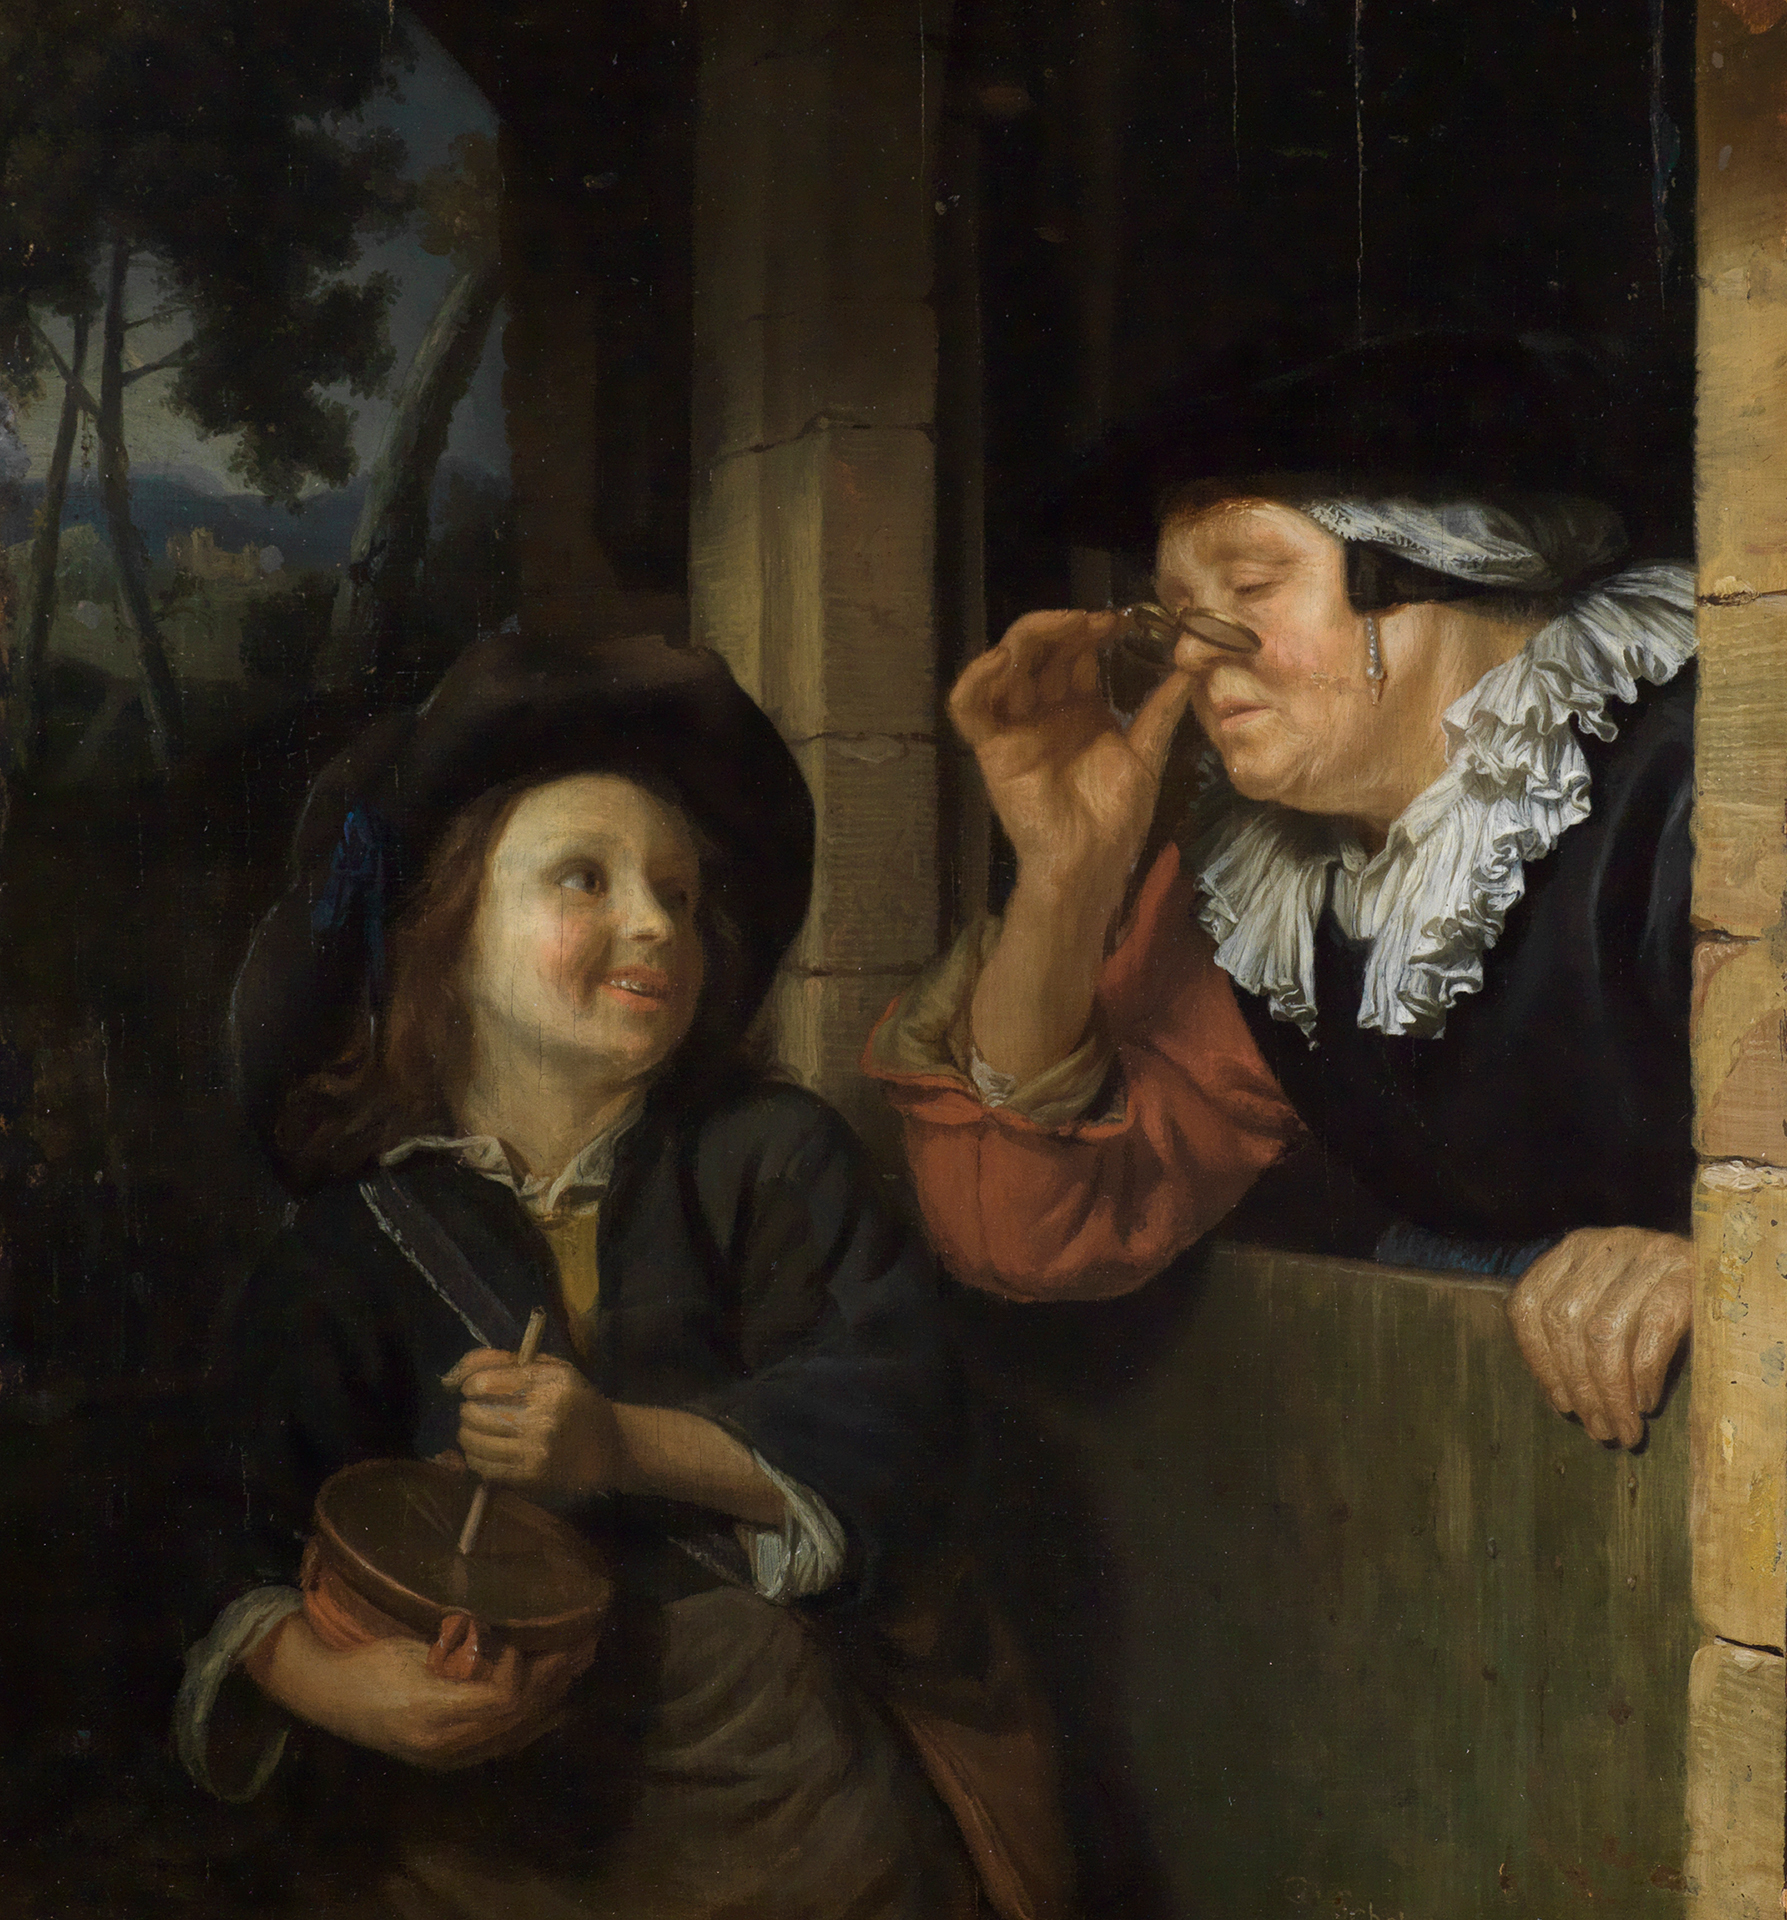 Vor einem Fenster ein kleiner Junge mit einem Instrument in der Hand. Er blickt lachend zu einer älteren Frau, die sich aus dem Fenster bäugt, eine Brille vor die Augen haltend.